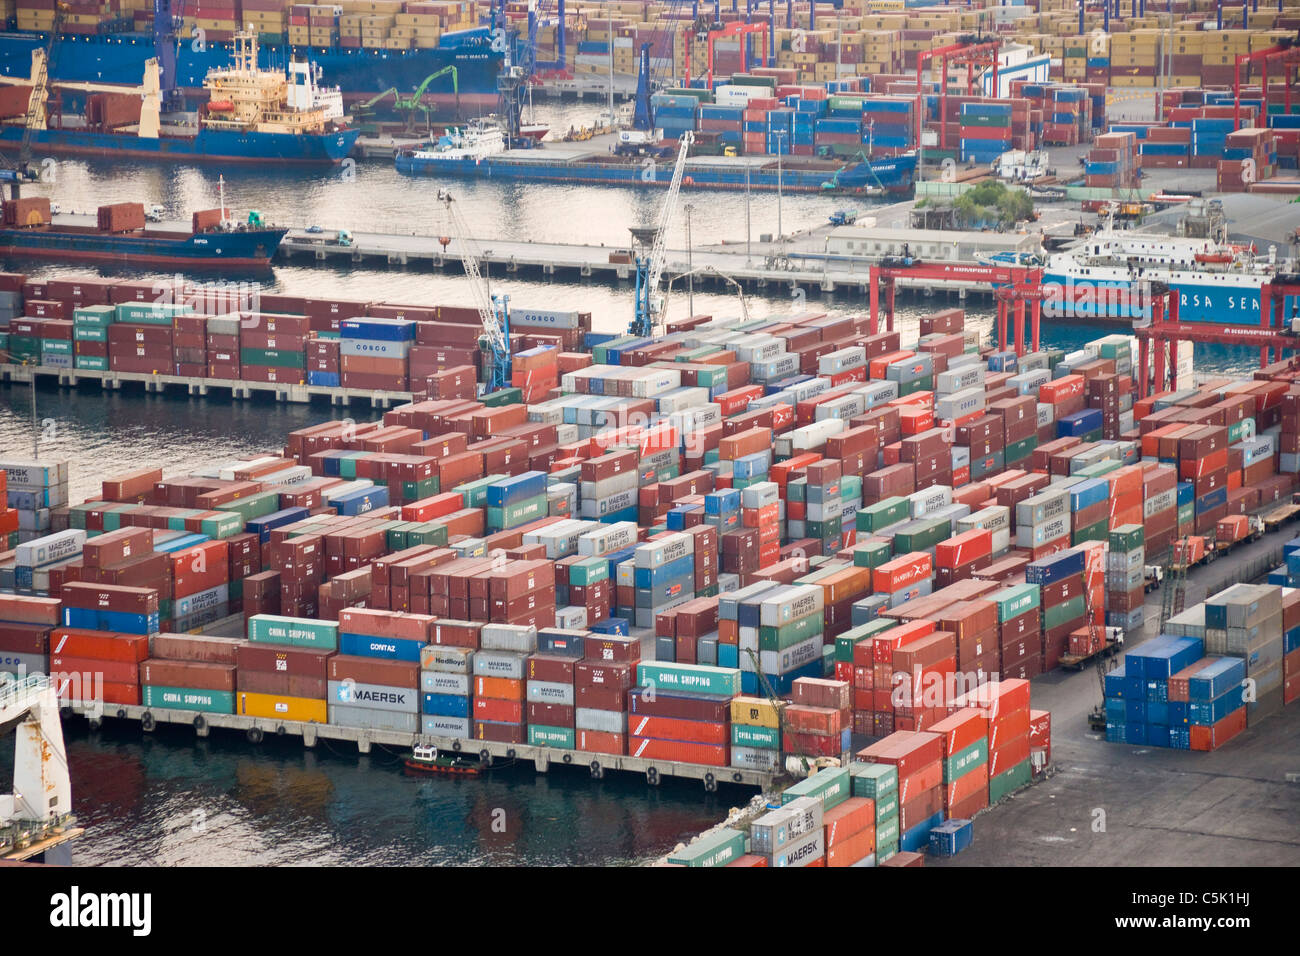 Vista aérea del puerto de contenedores, Ambarli Avcilar, al sudoeste de Estambul, Turquía Foto de stock